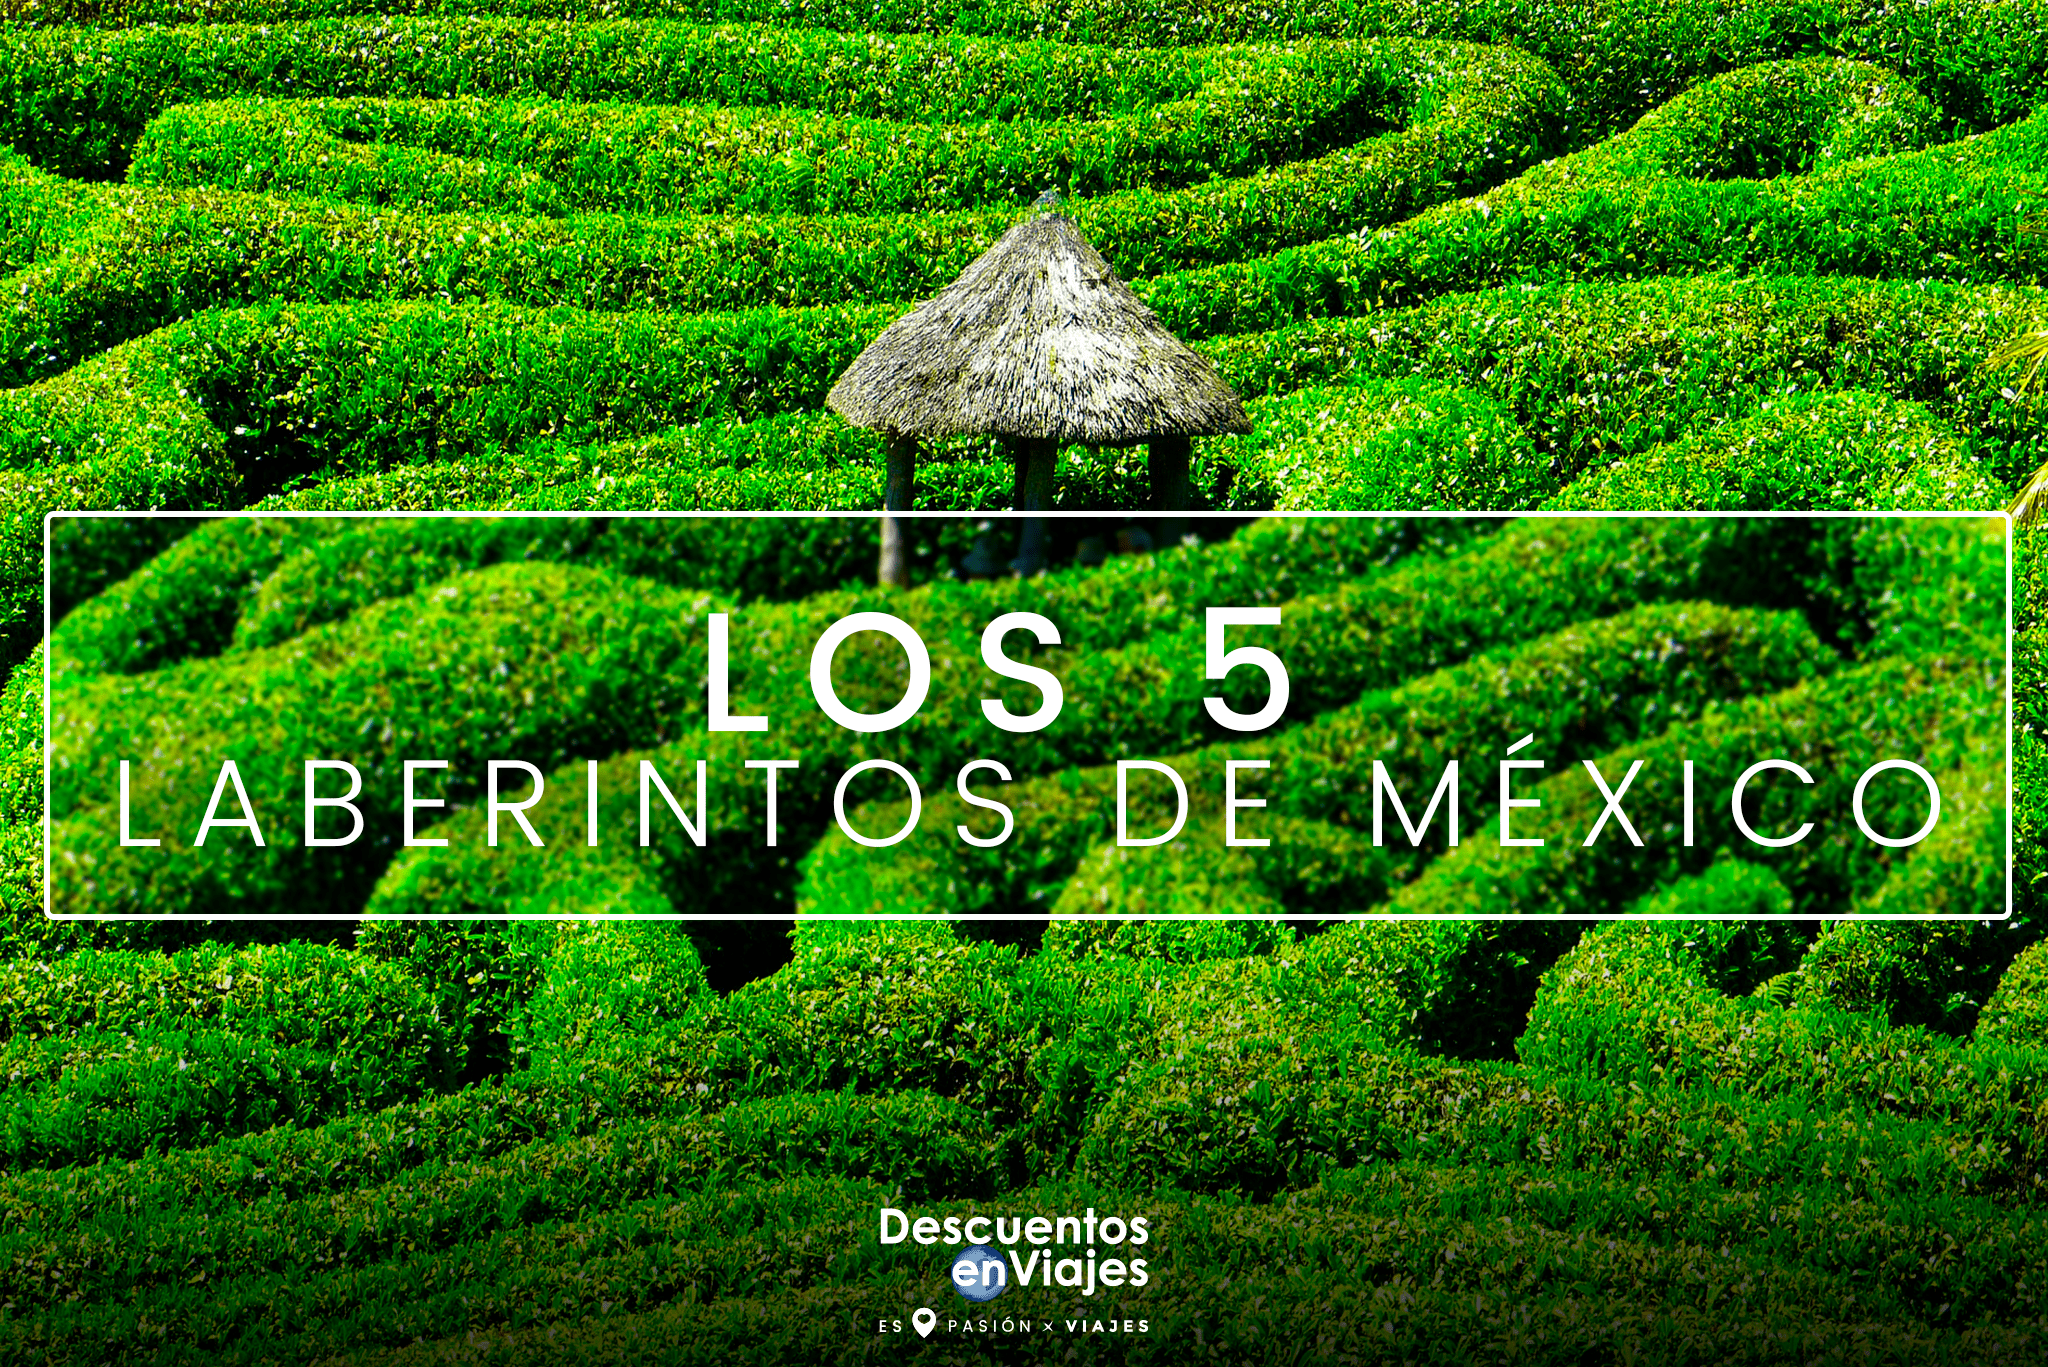 Los 5 laberintos de México que debes visitar